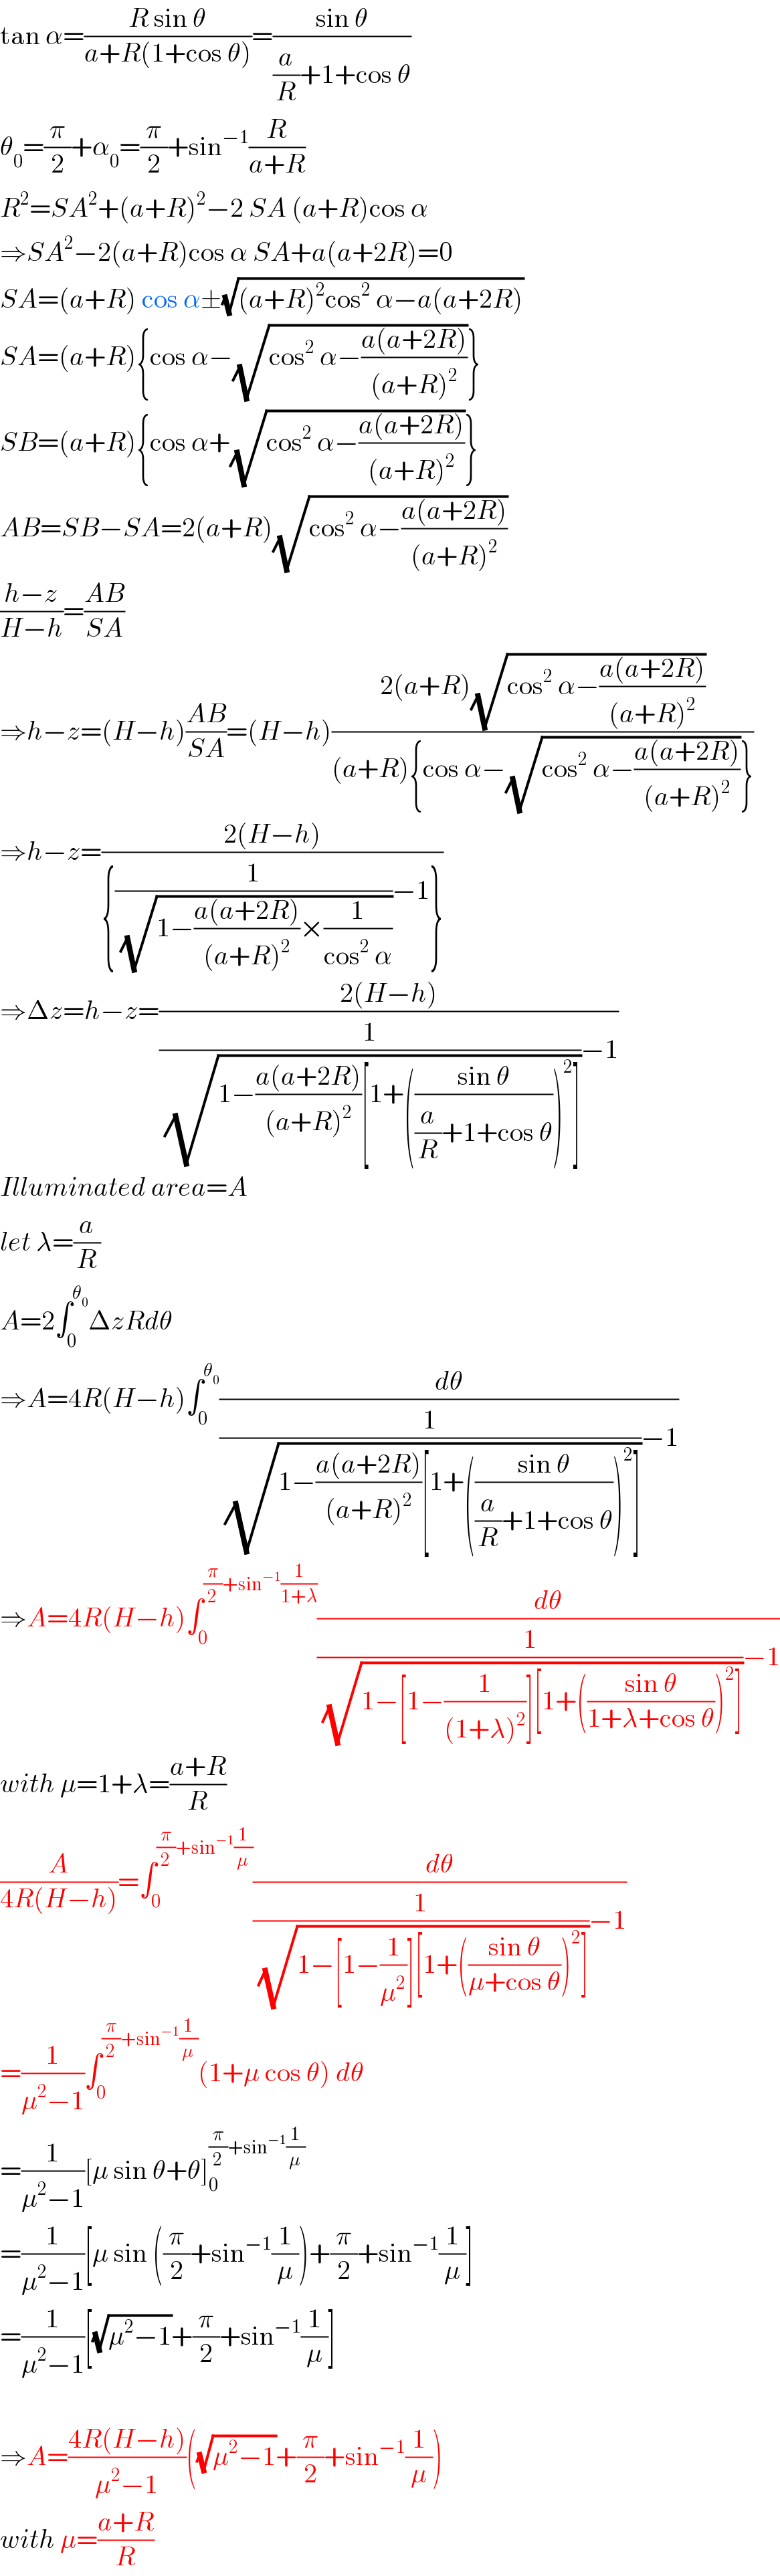 tan α=((R sin θ)/(a+R(1+cos θ)))=((sin θ)/((a/R)+1+cos θ))  θ_0 =(π/2)+α_0 =(π/2)+sin^(−1) (R/(a+R))  R^2 =SA^2 +(a+R)^2 −2 SA (a+R)cos α  ⇒SA^2 −2(a+R)cos α SA+a(a+2R)=0  SA=(a+R) cos α±(√((a+R)^2 cos^2  α−a(a+2R)))  SA=(a+R){cos α−(√(cos^2  α−((a(a+2R))/((a+R)^2 ))))}  SB=(a+R){cos α+(√(cos^2  α−((a(a+2R))/((a+R)^2 ))))}  AB=SB−SA=2(a+R)(√(cos^2  α−((a(a+2R))/((a+R)^2 ))))  ((h−z)/(H−h))=((AB)/(SA))  ⇒h−z=(H−h)((AB)/(SA))=(H−h)((2(a+R)(√(cos^2  α−((a(a+2R))/((a+R)^2 )))))/((a+R){cos α−(√(cos^2  α−((a(a+2R))/((a+R)^2 ))))}))  ⇒h−z=((2(H−h))/({(1/(√(1−((a(a+2R))/((a+R)^2 ))×(1/(cos^2  α)))))−1}))  ⇒Δz=h−z=((2(H−h))/((1/(√(1−((a(a+2R))/((a+R)^2 ))[1+(((sin θ)/((a/R)+1+cos θ)))^2 ])))−1))  Illuminated area=A  let λ=(a/R)  A=2∫_0 ^θ_0  ΔzRdθ  ⇒A=4R(H−h)∫_0 ^θ_0  (dθ/((1/(√(1−((a(a+2R))/((a+R)^2 ))[1+(((sin θ)/((a/R)+1+cos θ)))^2 ])))−1))  ⇒A=4R(H−h)∫_0 ^((π/2)+sin^(−1) (1/(1+λ))) (dθ/((1/(√(1−[1−(1/((1+λ)^2 ))][1+(((sin θ)/(1+λ+cos θ)))^2 ])))−1))  with μ=1+λ=((a+R)/R)  (A/(4R(H−h)))=∫_0 ^((π/2)+sin^(−1) (1/μ)) (dθ/((1/(√(1−[1−(1/μ^2 )][1+(((sin θ)/(μ+cos θ)))^2 ])))−1))  =(1/(μ^2 −1))∫_0 ^((π/2)+sin^(−1) (1/μ)) (1+μ cos θ) dθ  =(1/(μ^2 −1))[μ sin θ+θ]_0 ^((π/2)+sin^(−1) (1/μ))   =(1/(μ^2 −1))[μ sin ((π/2)+sin^(−1) (1/μ))+(π/2)+sin^(−1) (1/μ)]  =(1/(μ^2 −1))[(√(μ^2 −1))+(π/2)+sin^(−1) (1/μ)]    ⇒A=((4R(H−h))/(μ^2 −1))((√(μ^2 −1))+(π/2)+sin^(−1) (1/μ))  with μ=((a+R)/R)  